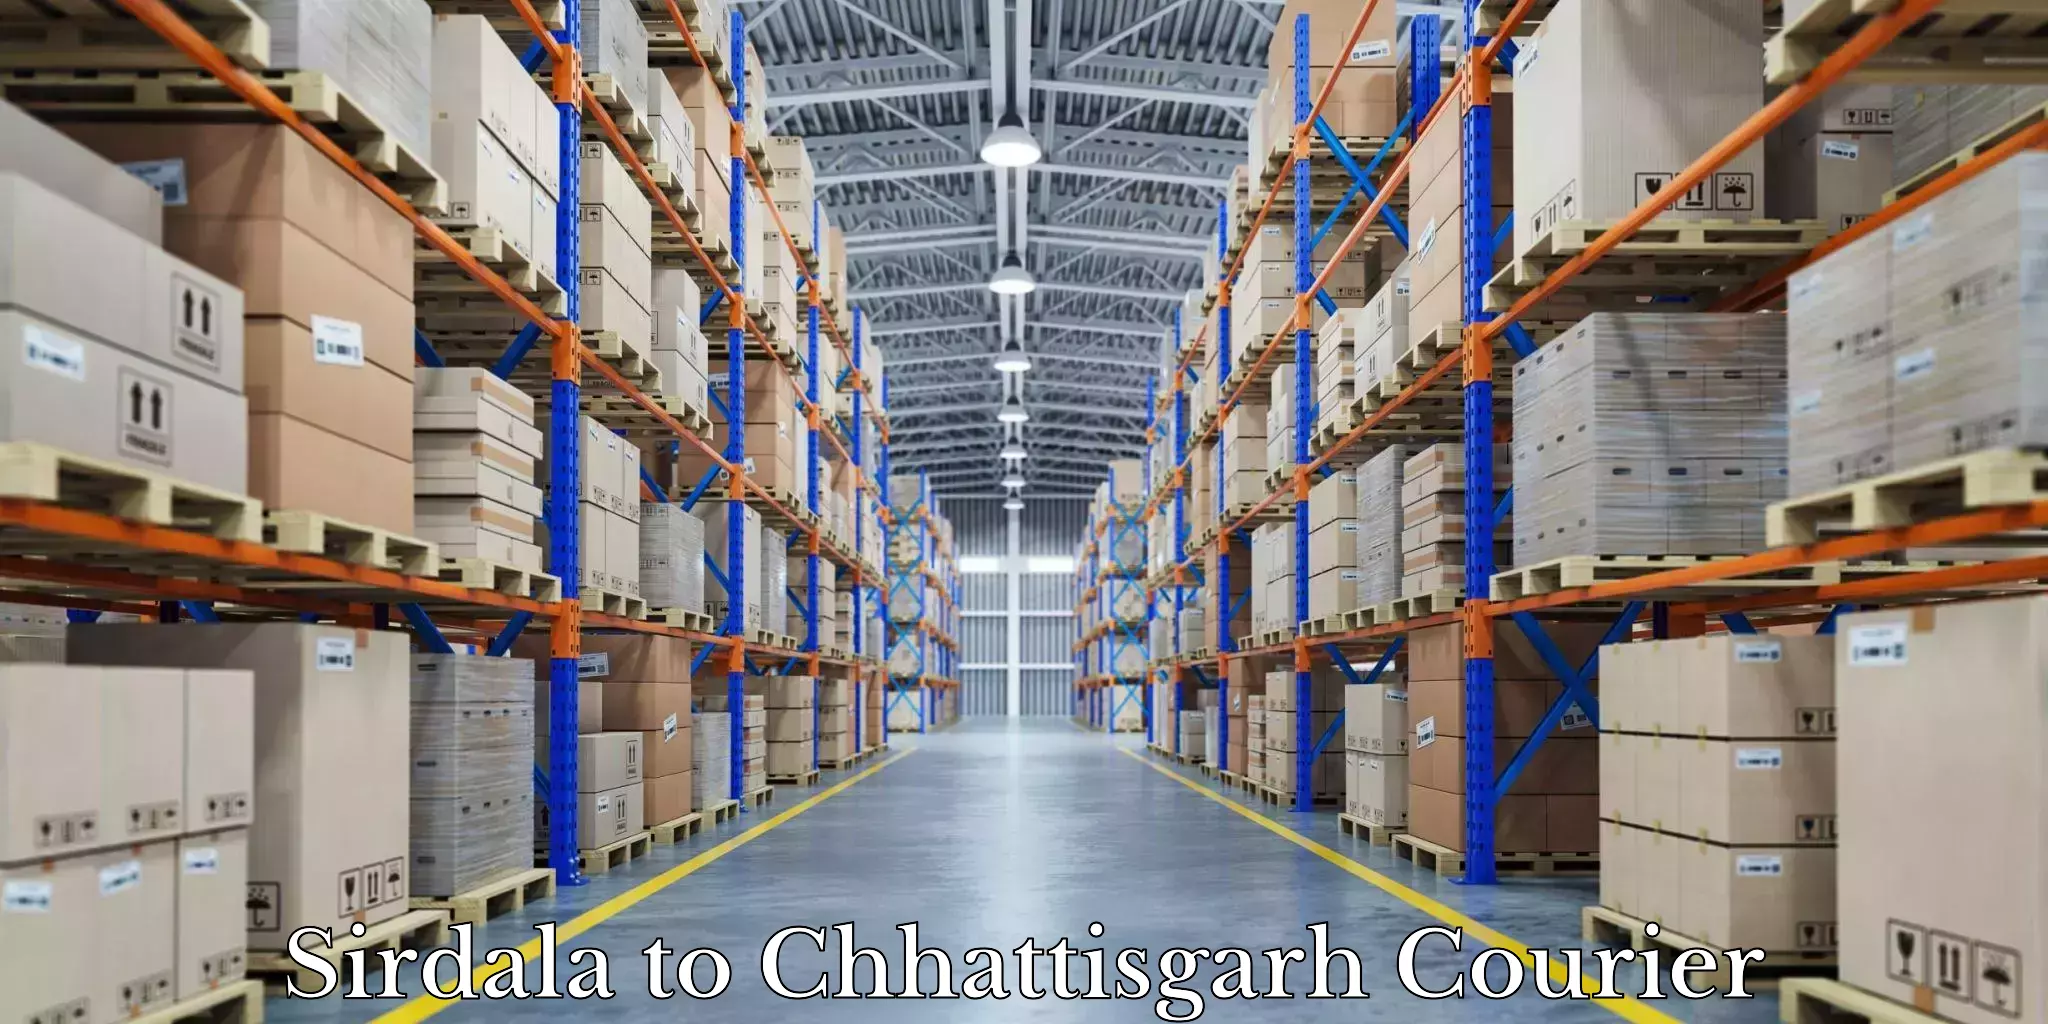 Specialized moving company Sirdala to Korea Chhattisgarh